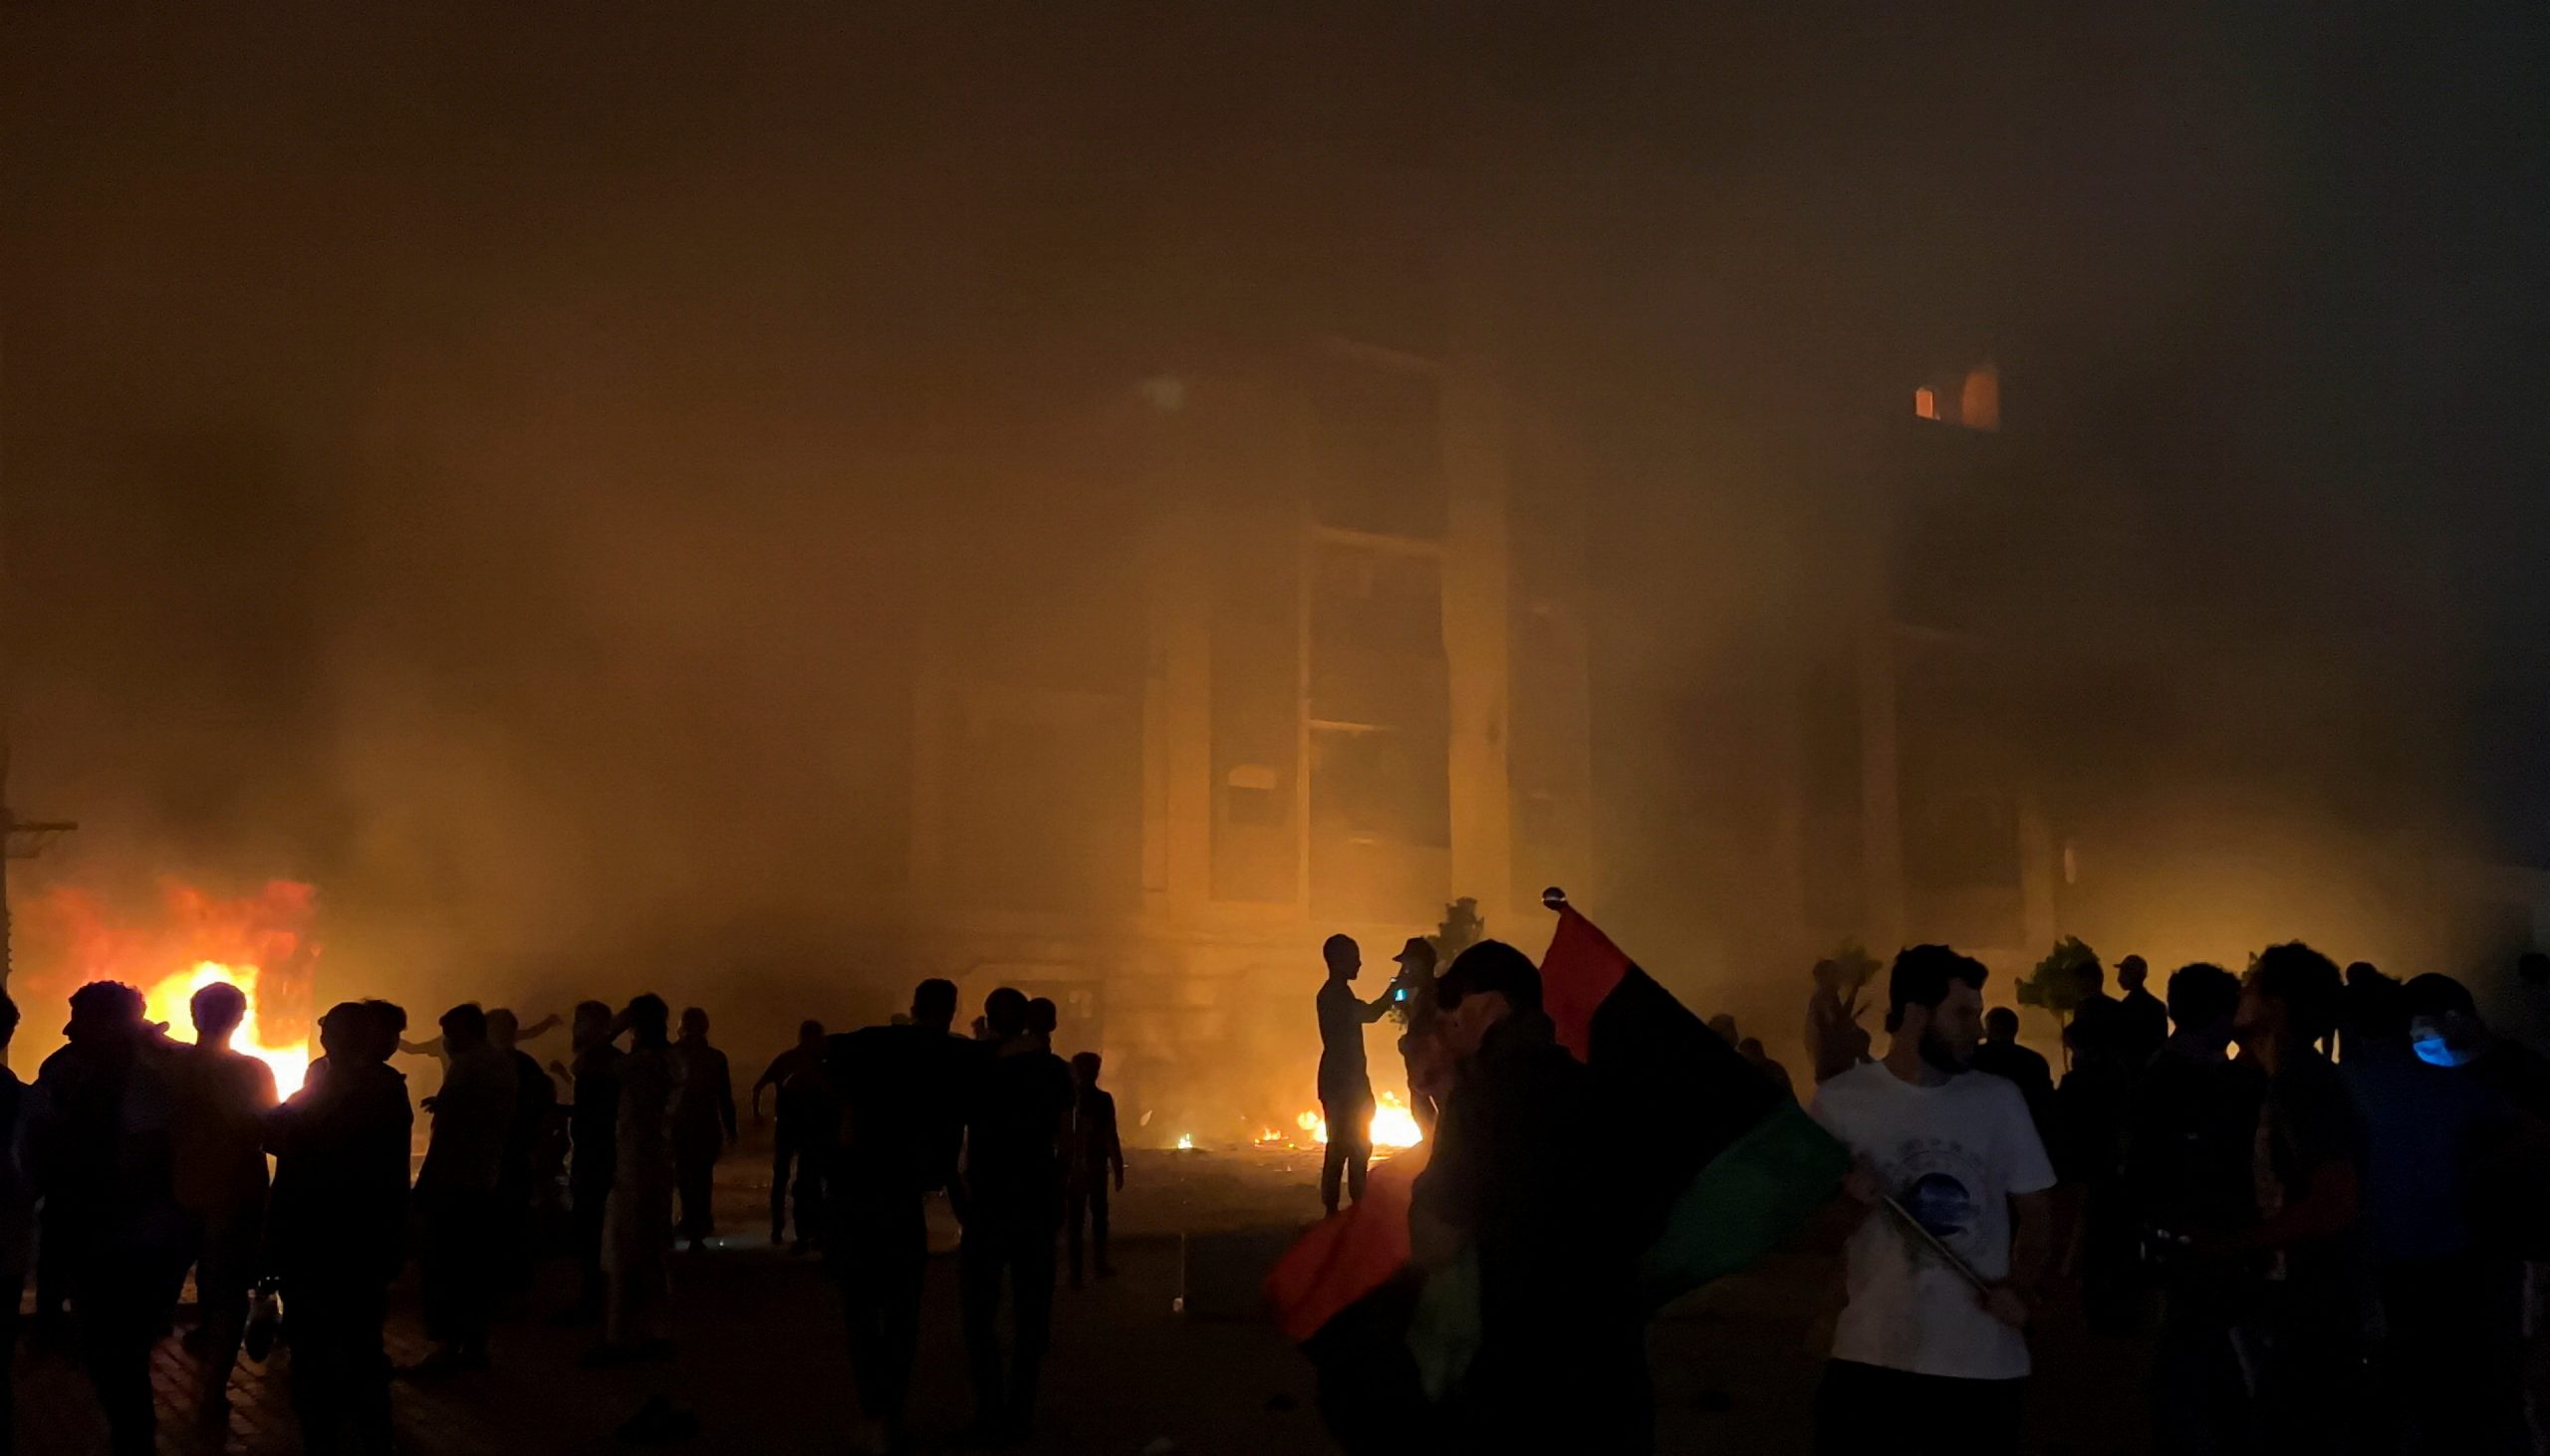 Libia : लीबिया में रोटी-बिजली की मांग को लेकर हिंसक भीड़ ने संसद में लगाई आग, UN ने की निंदा